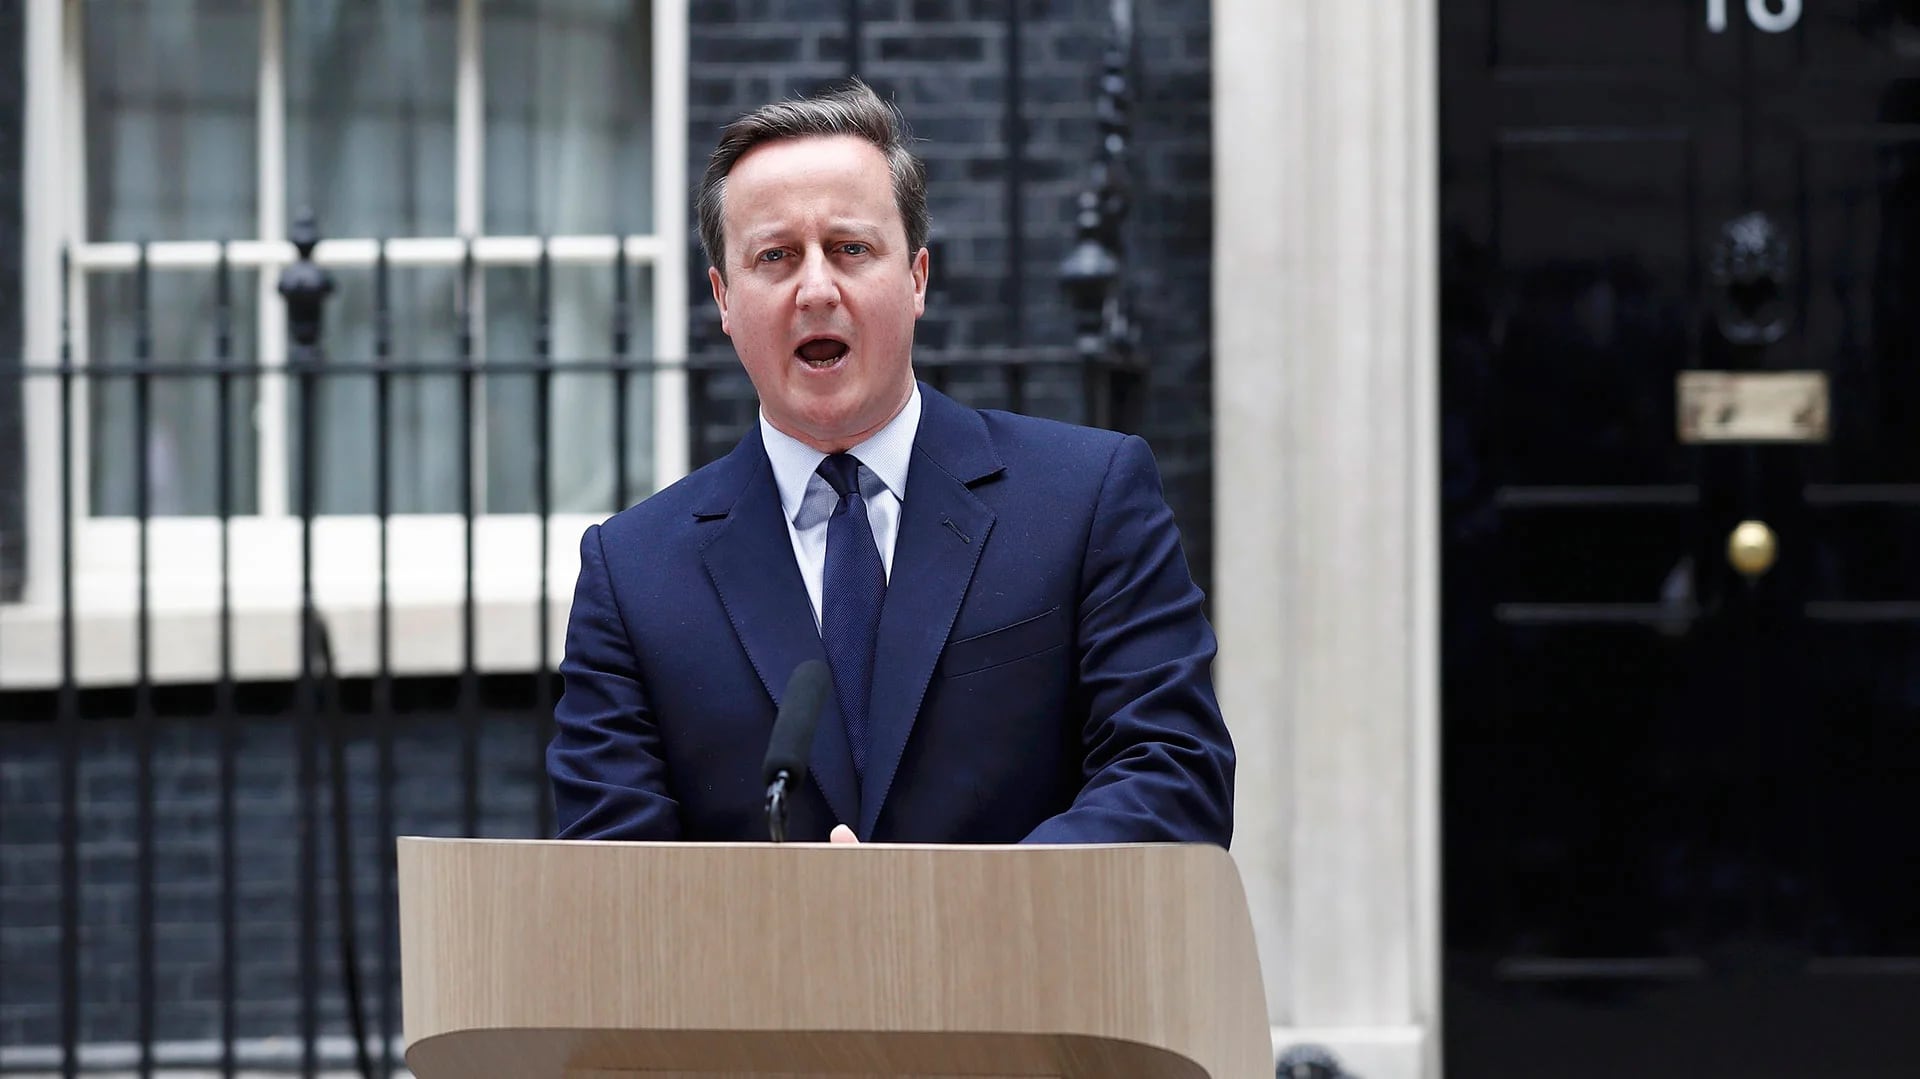 El primer ministro británico David Cameron renunció tras confirmarse la victoria del Brexit (Reuters)